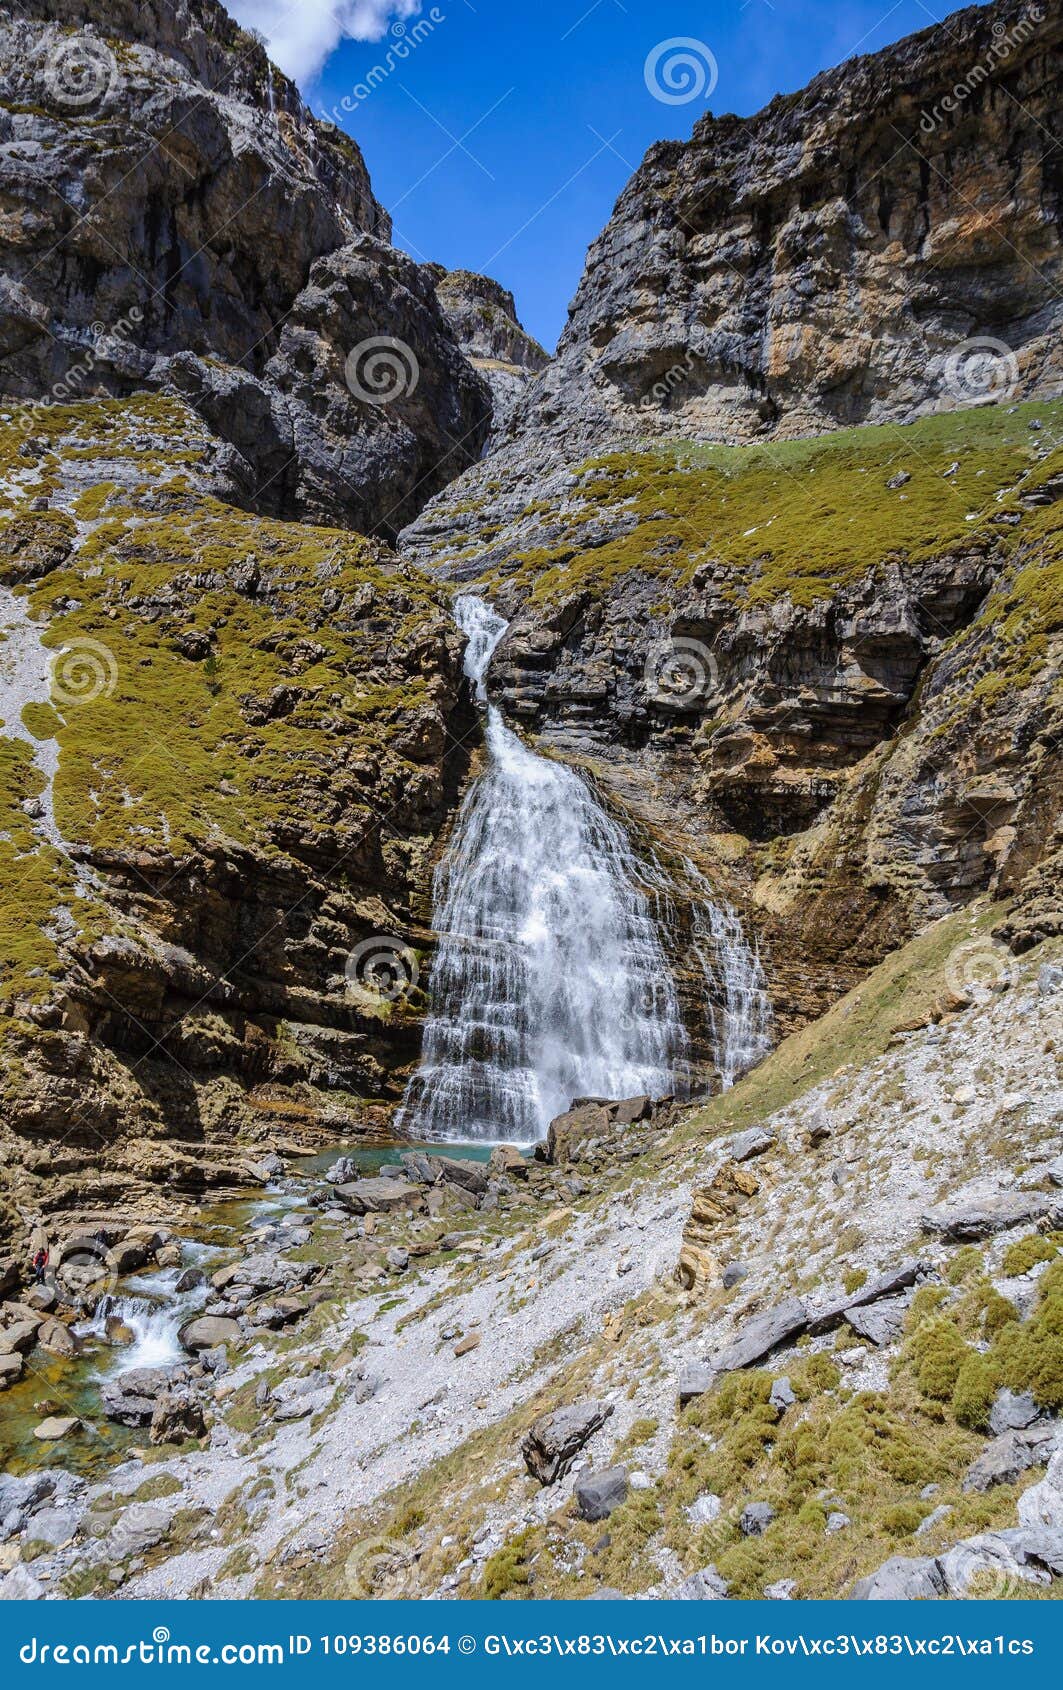 cola de caballo waterfall in ordesa valley, aragon, spain